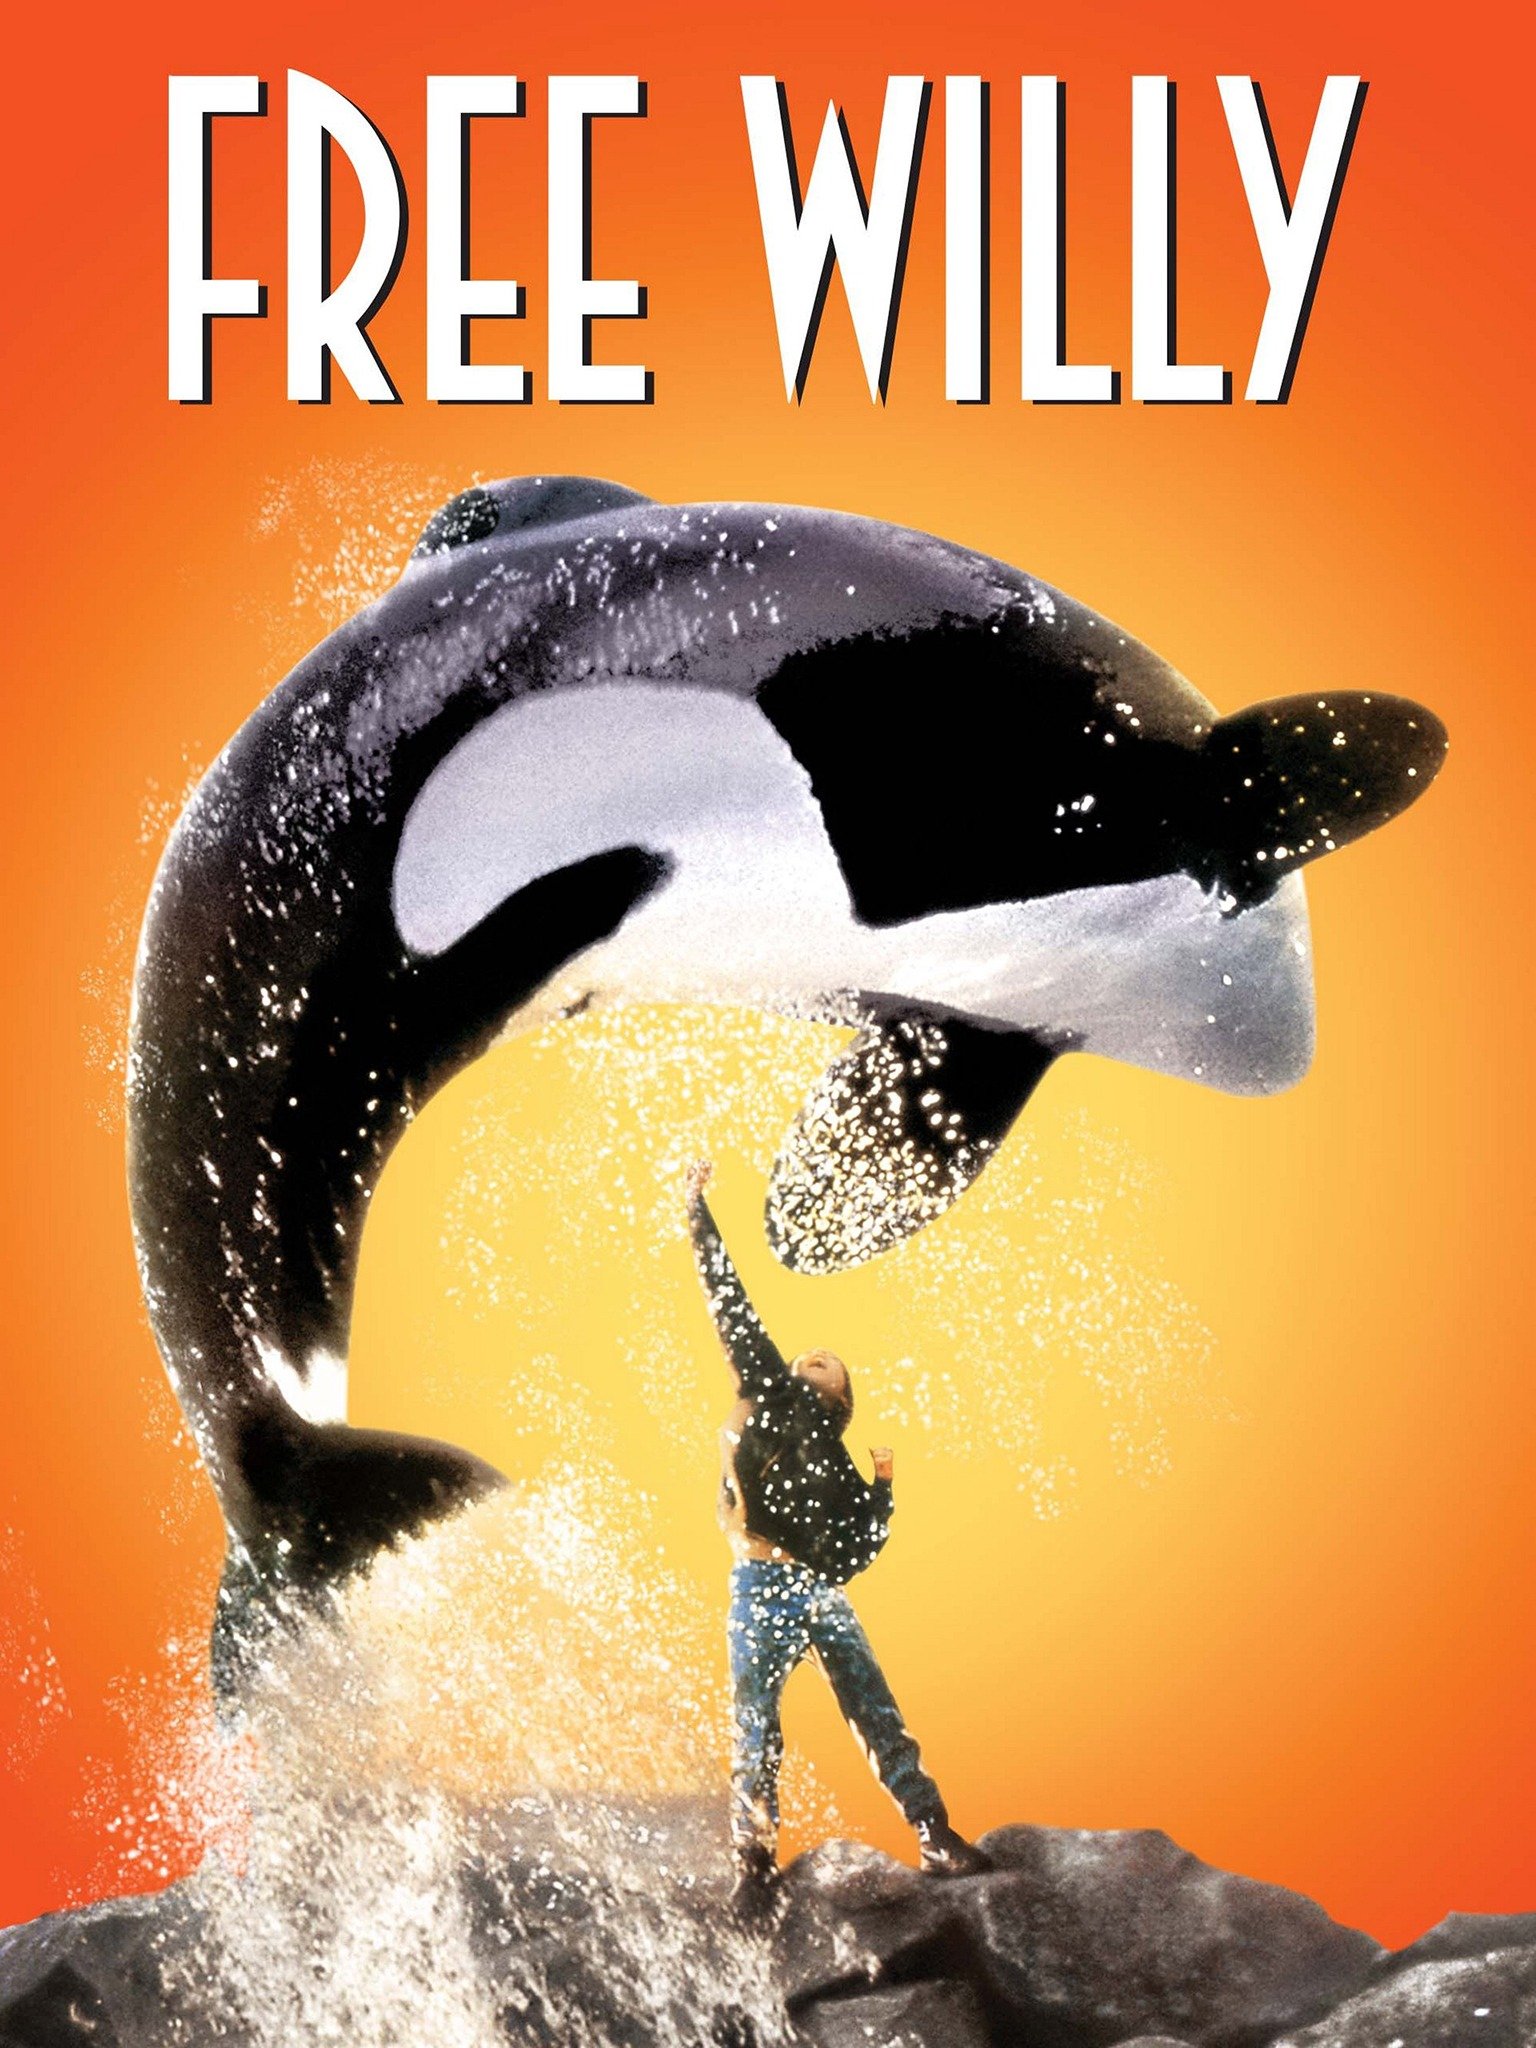 free willy 2 streaming italiano